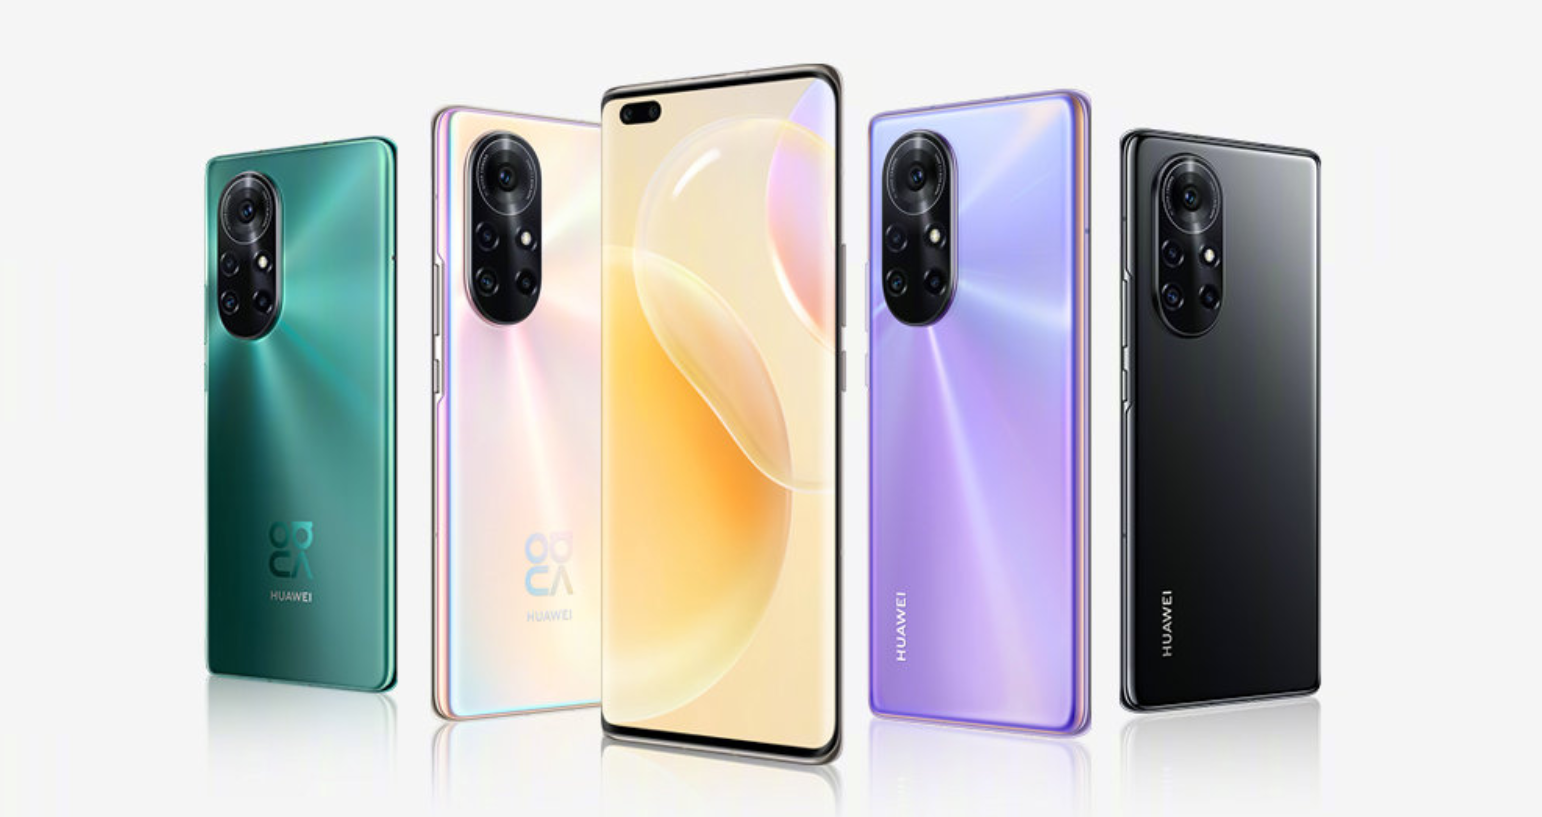 Huawei Nova 8 and Nova 8 Pro launched - Xiaomi, OPPO e Vivo stanno andando di nuovo nella fascia alta, c’è uno spettacolo questa volta?